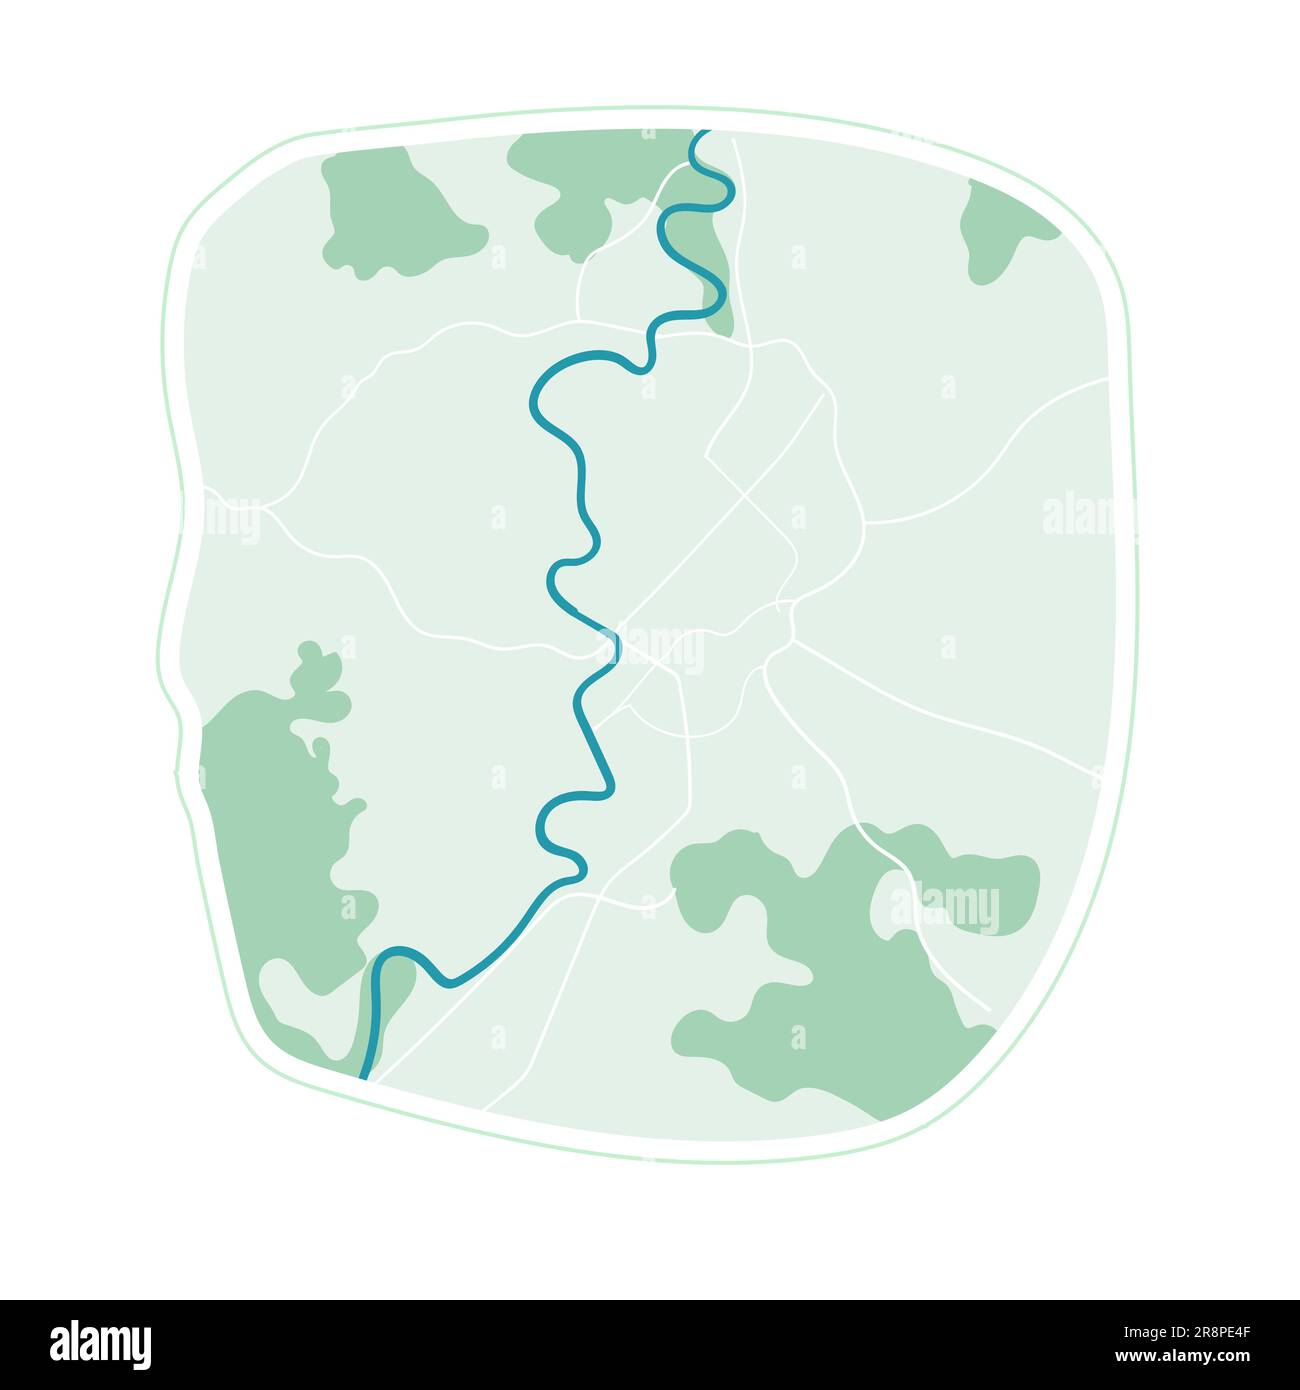 Stadtplan Сity Rom, flacher Stadtplan mit Grünflächen und Stadtgrenzen. vektordarstellung auf weiß isoliert Stock Vektor